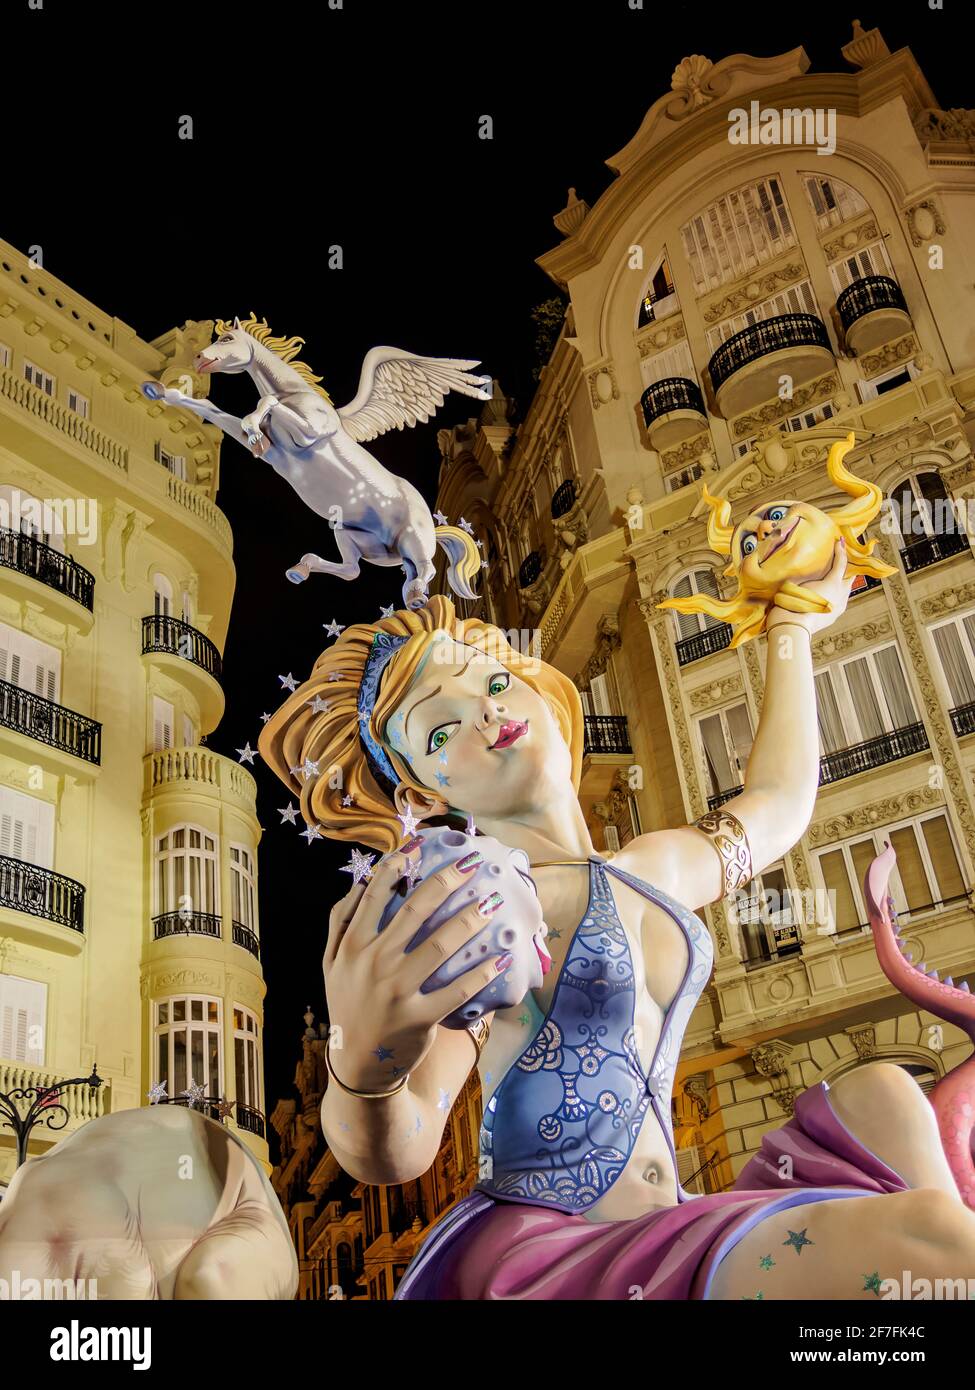 Las fallas, una celebración tradicional que se celebra anualmente en conmemoración de San José, Valencia, España, Europa Foto de stock